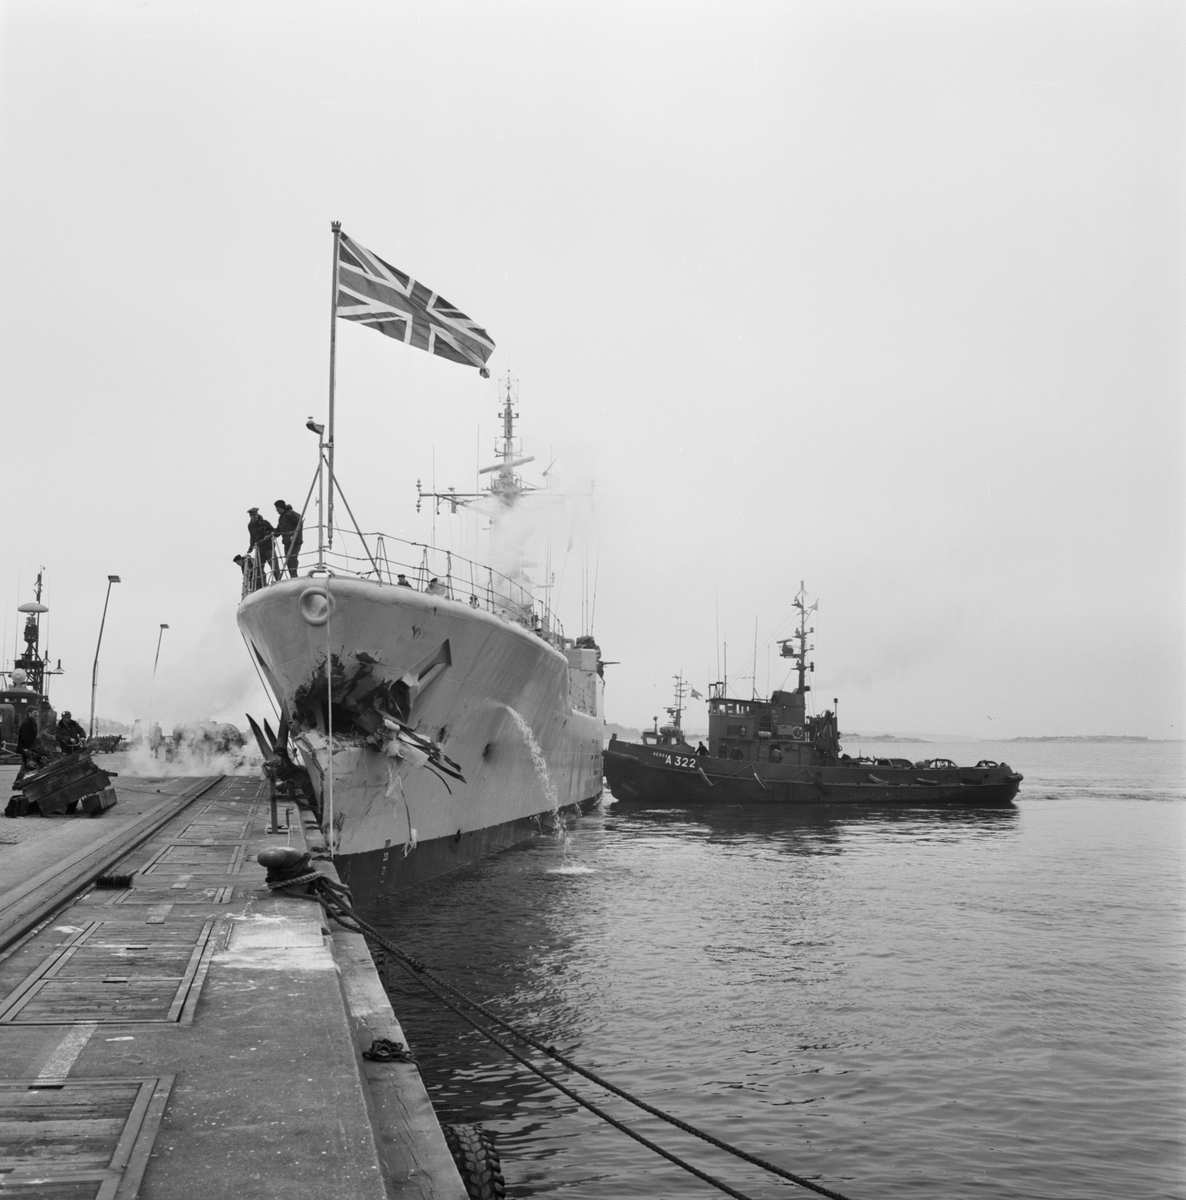 Engels fregatt som deltog bland annat i Falklandskriget.